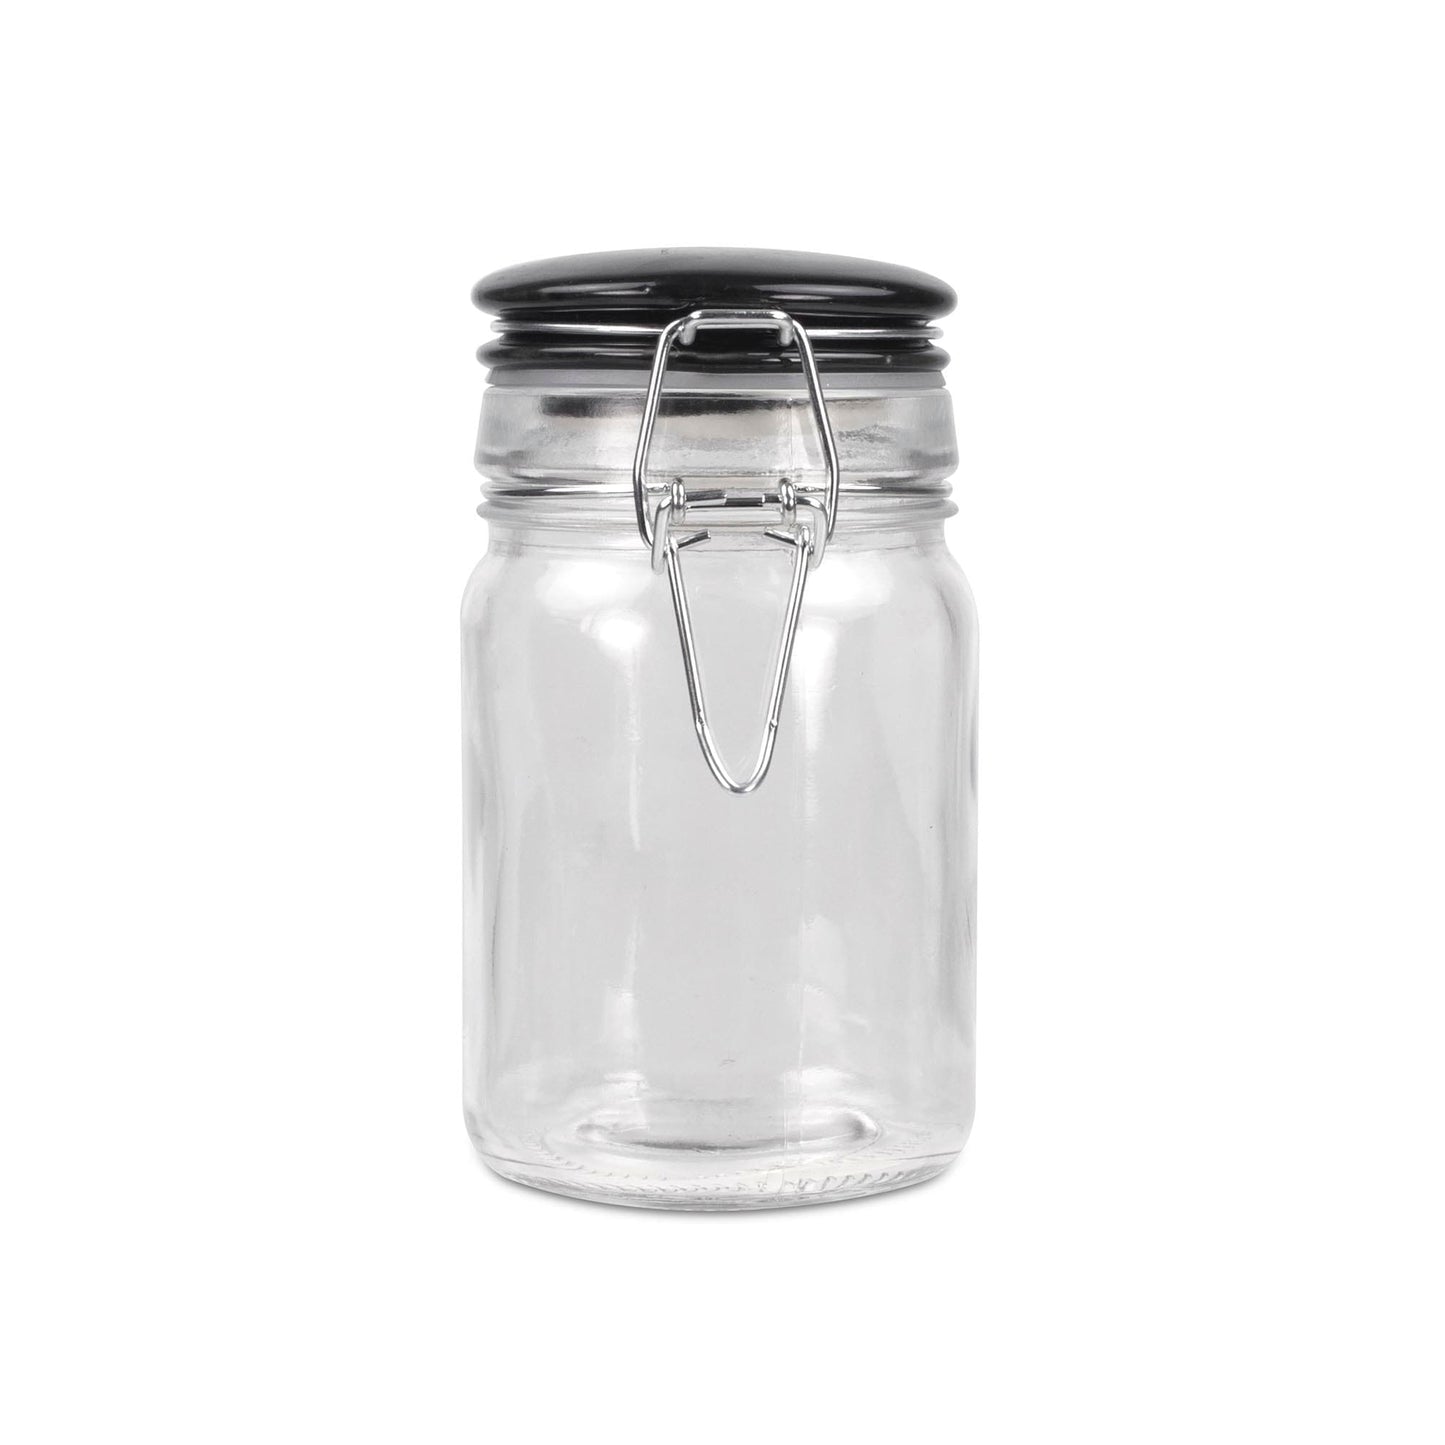 Mini Clasp Jar with Ceramic Top